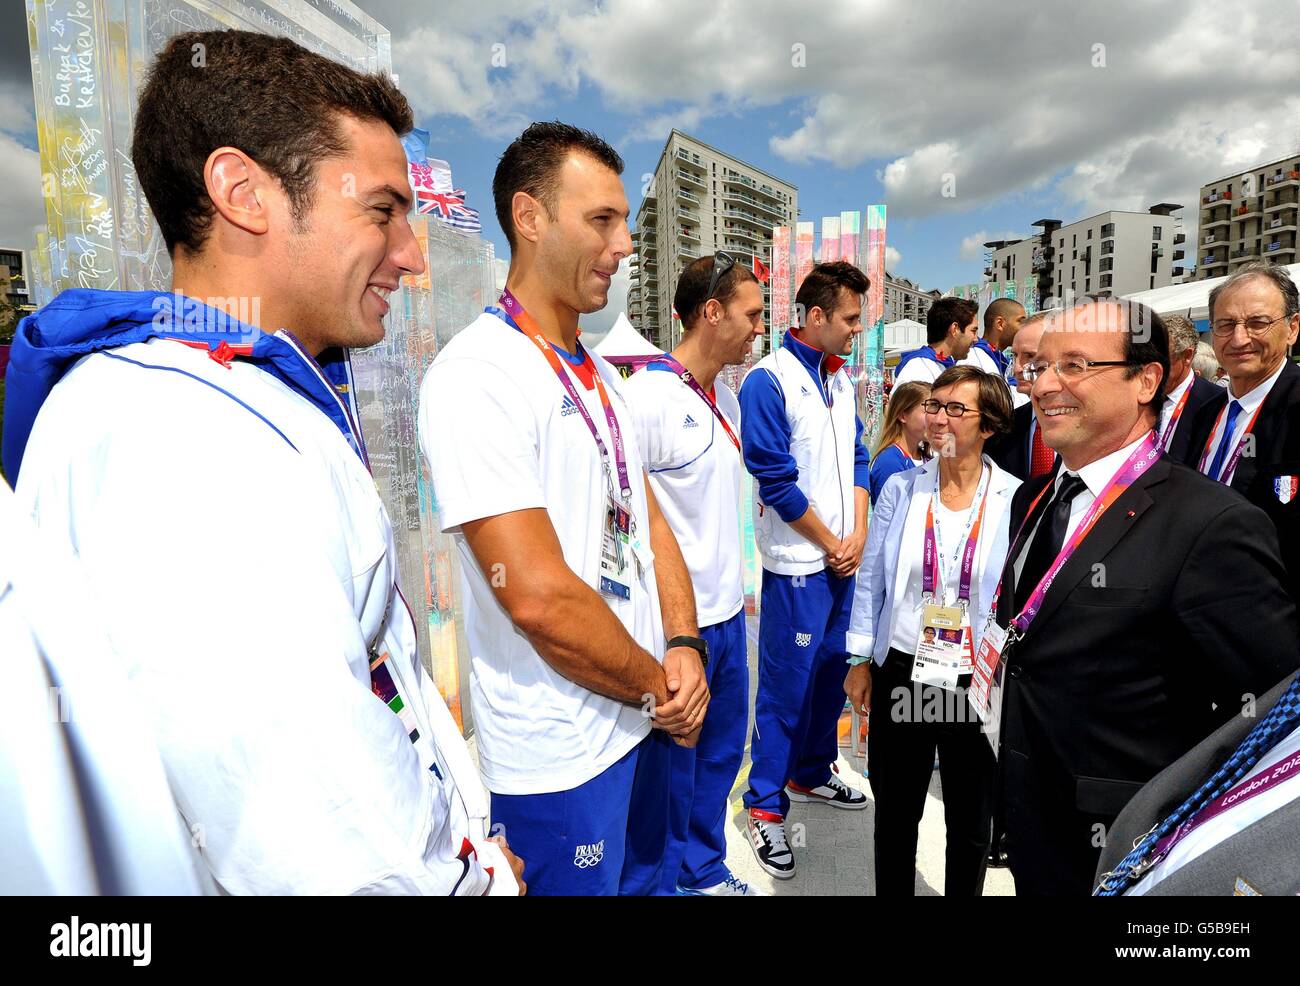 Frankreichs Präsident Francois Hollande spricht mit Mitgliedern der französischen Basketballmannschaft (Namen nicht angegeben) während der Reise des Präsidenten in das Dorf der Olympischen Athleten in Stratford, Ost-London. Stockfoto